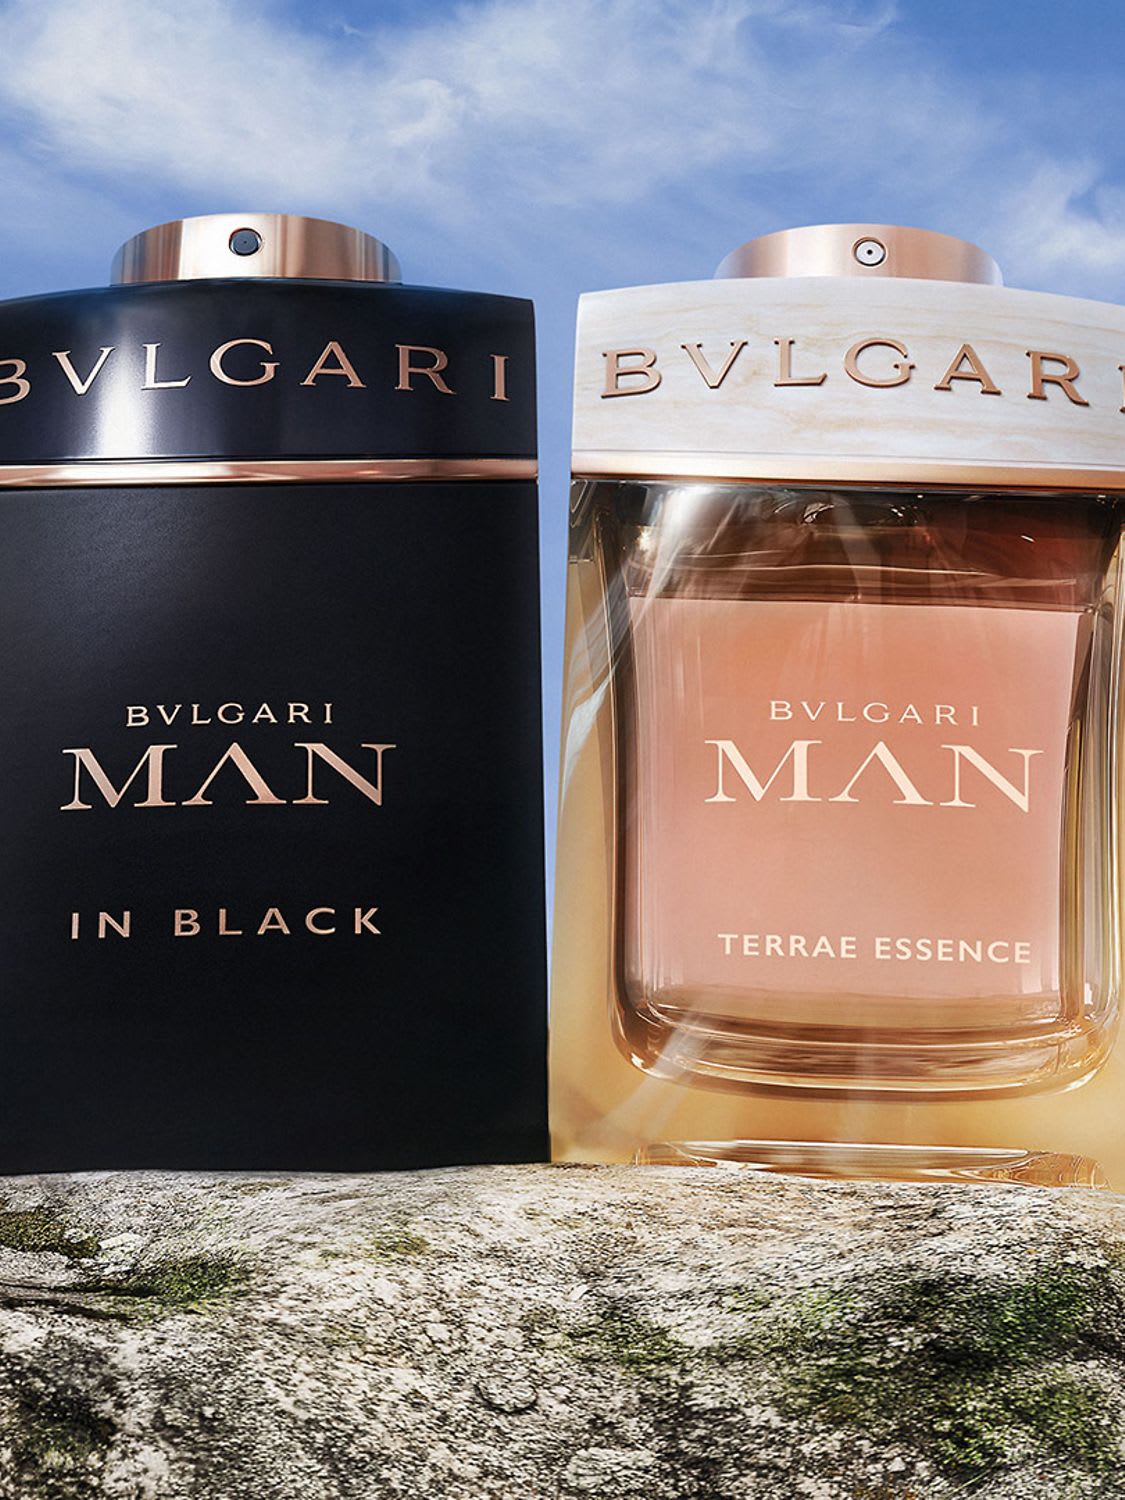 ブルガリ マン フレグランス - 新世代の男性らしさを演出する香り | Bvlgari Official Store